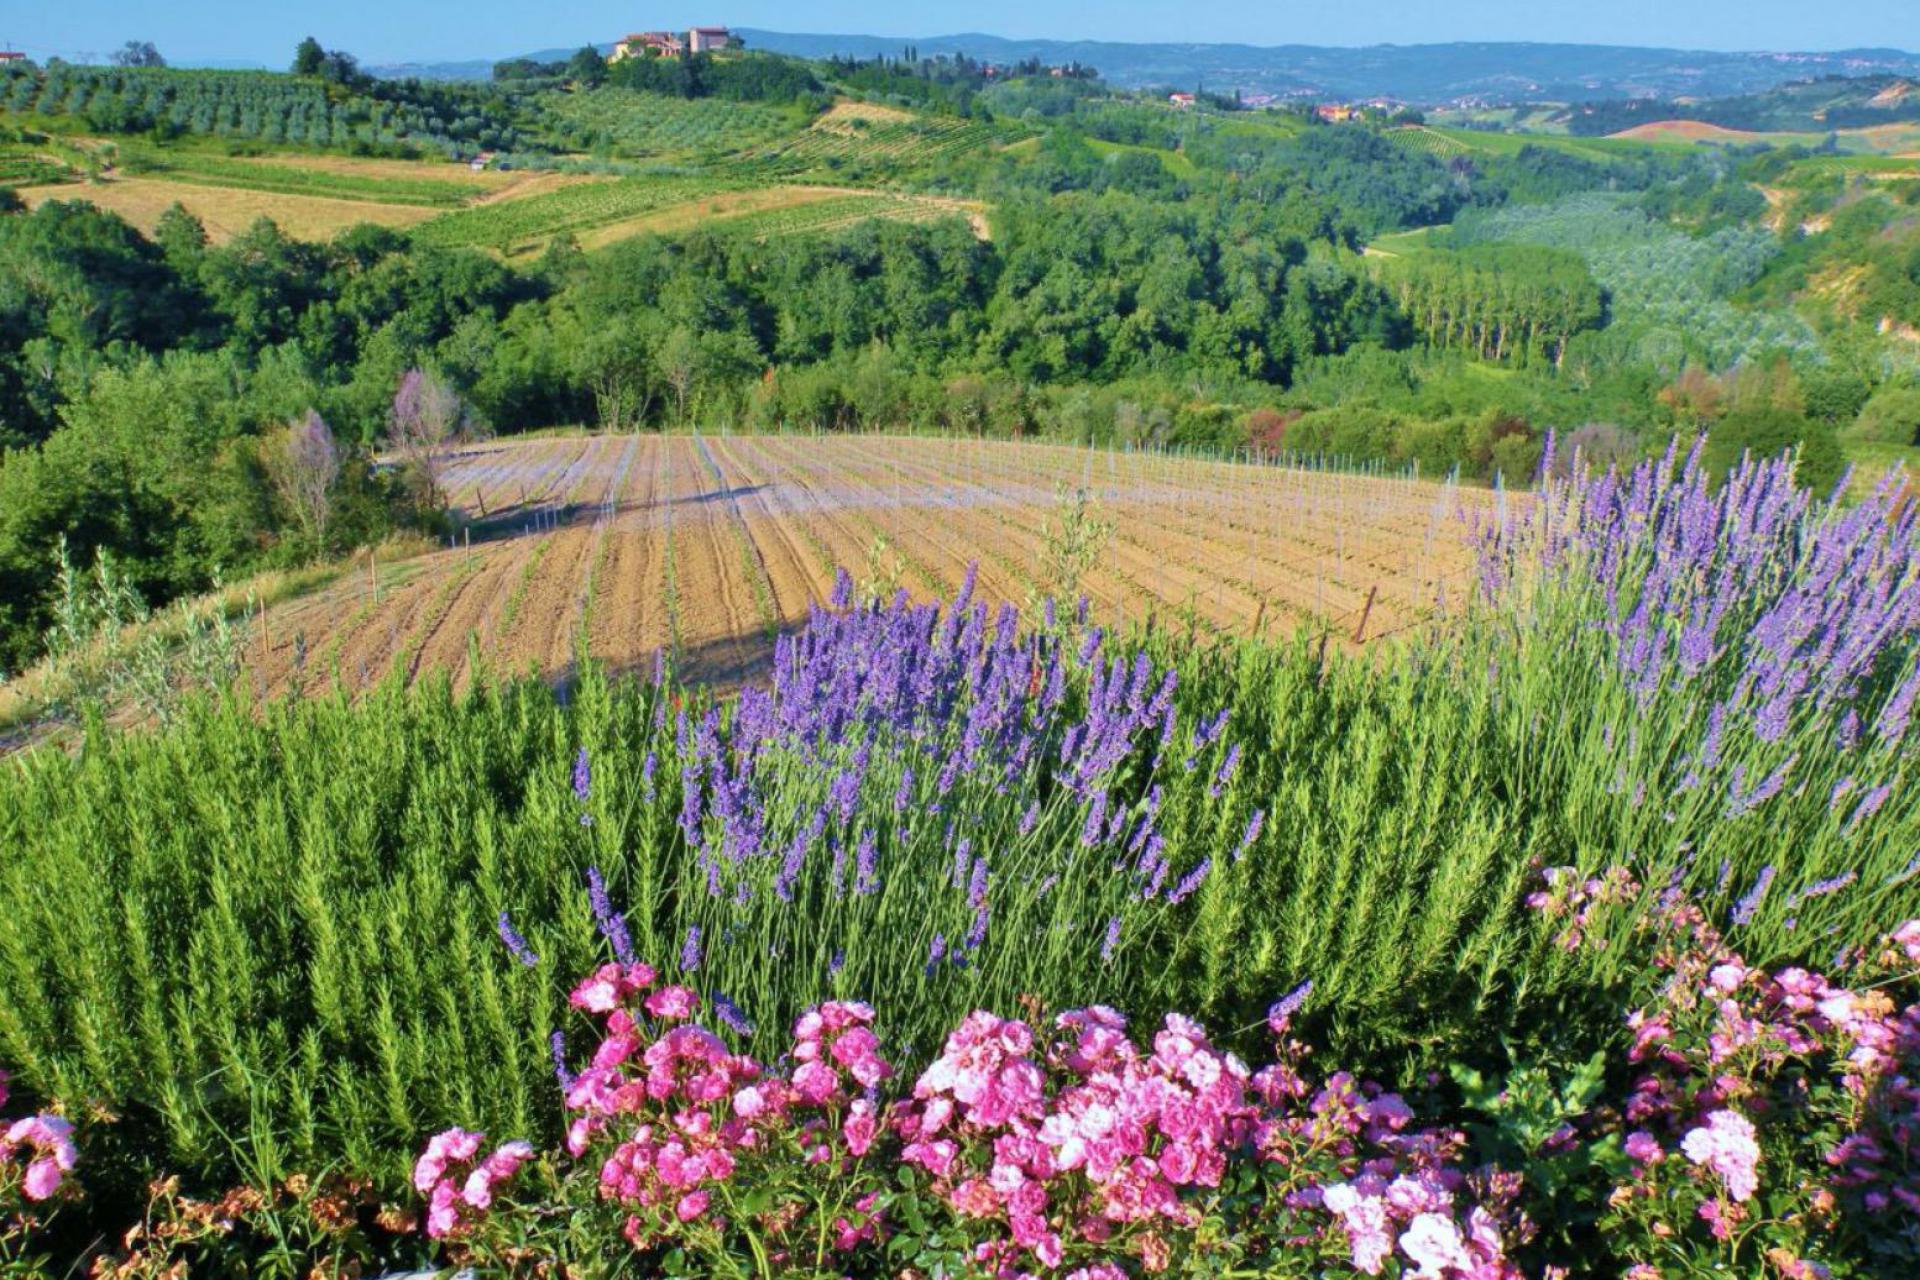 Agriturismo Tuscany Agriturismo Tuscany in olivegrove with amazing views